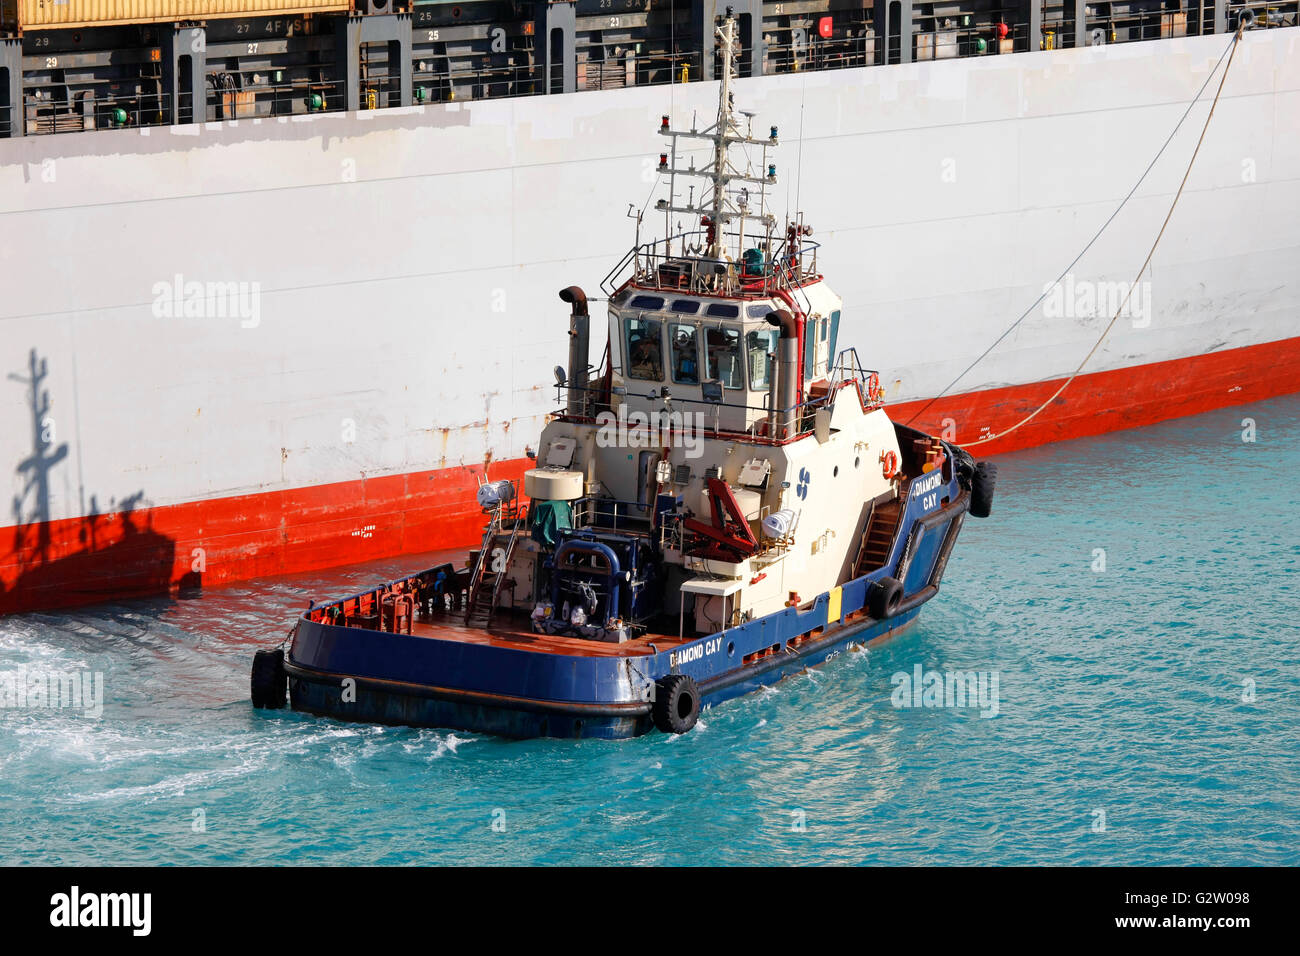 Tugboat pushing cargo dans le port Banque D'Images